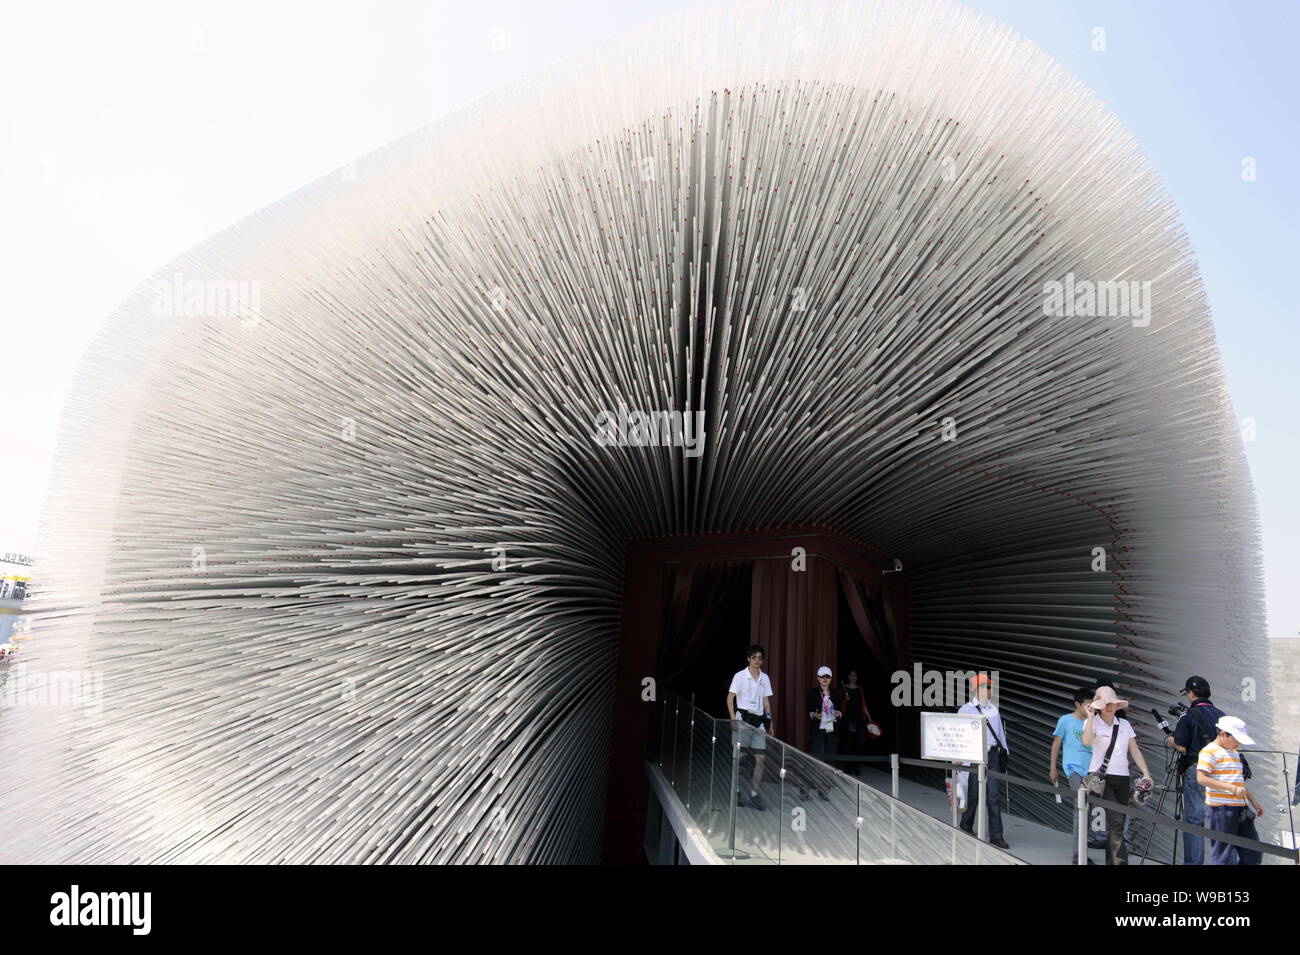 Besucher verlassen den britischen Pavillon auf der Expo in Shanghai, China, 4. Mai 2010. Ein Pavillon wie ein Kasten, der sich aus Tausenden von Stacheln schwebt ohne Stockfoto